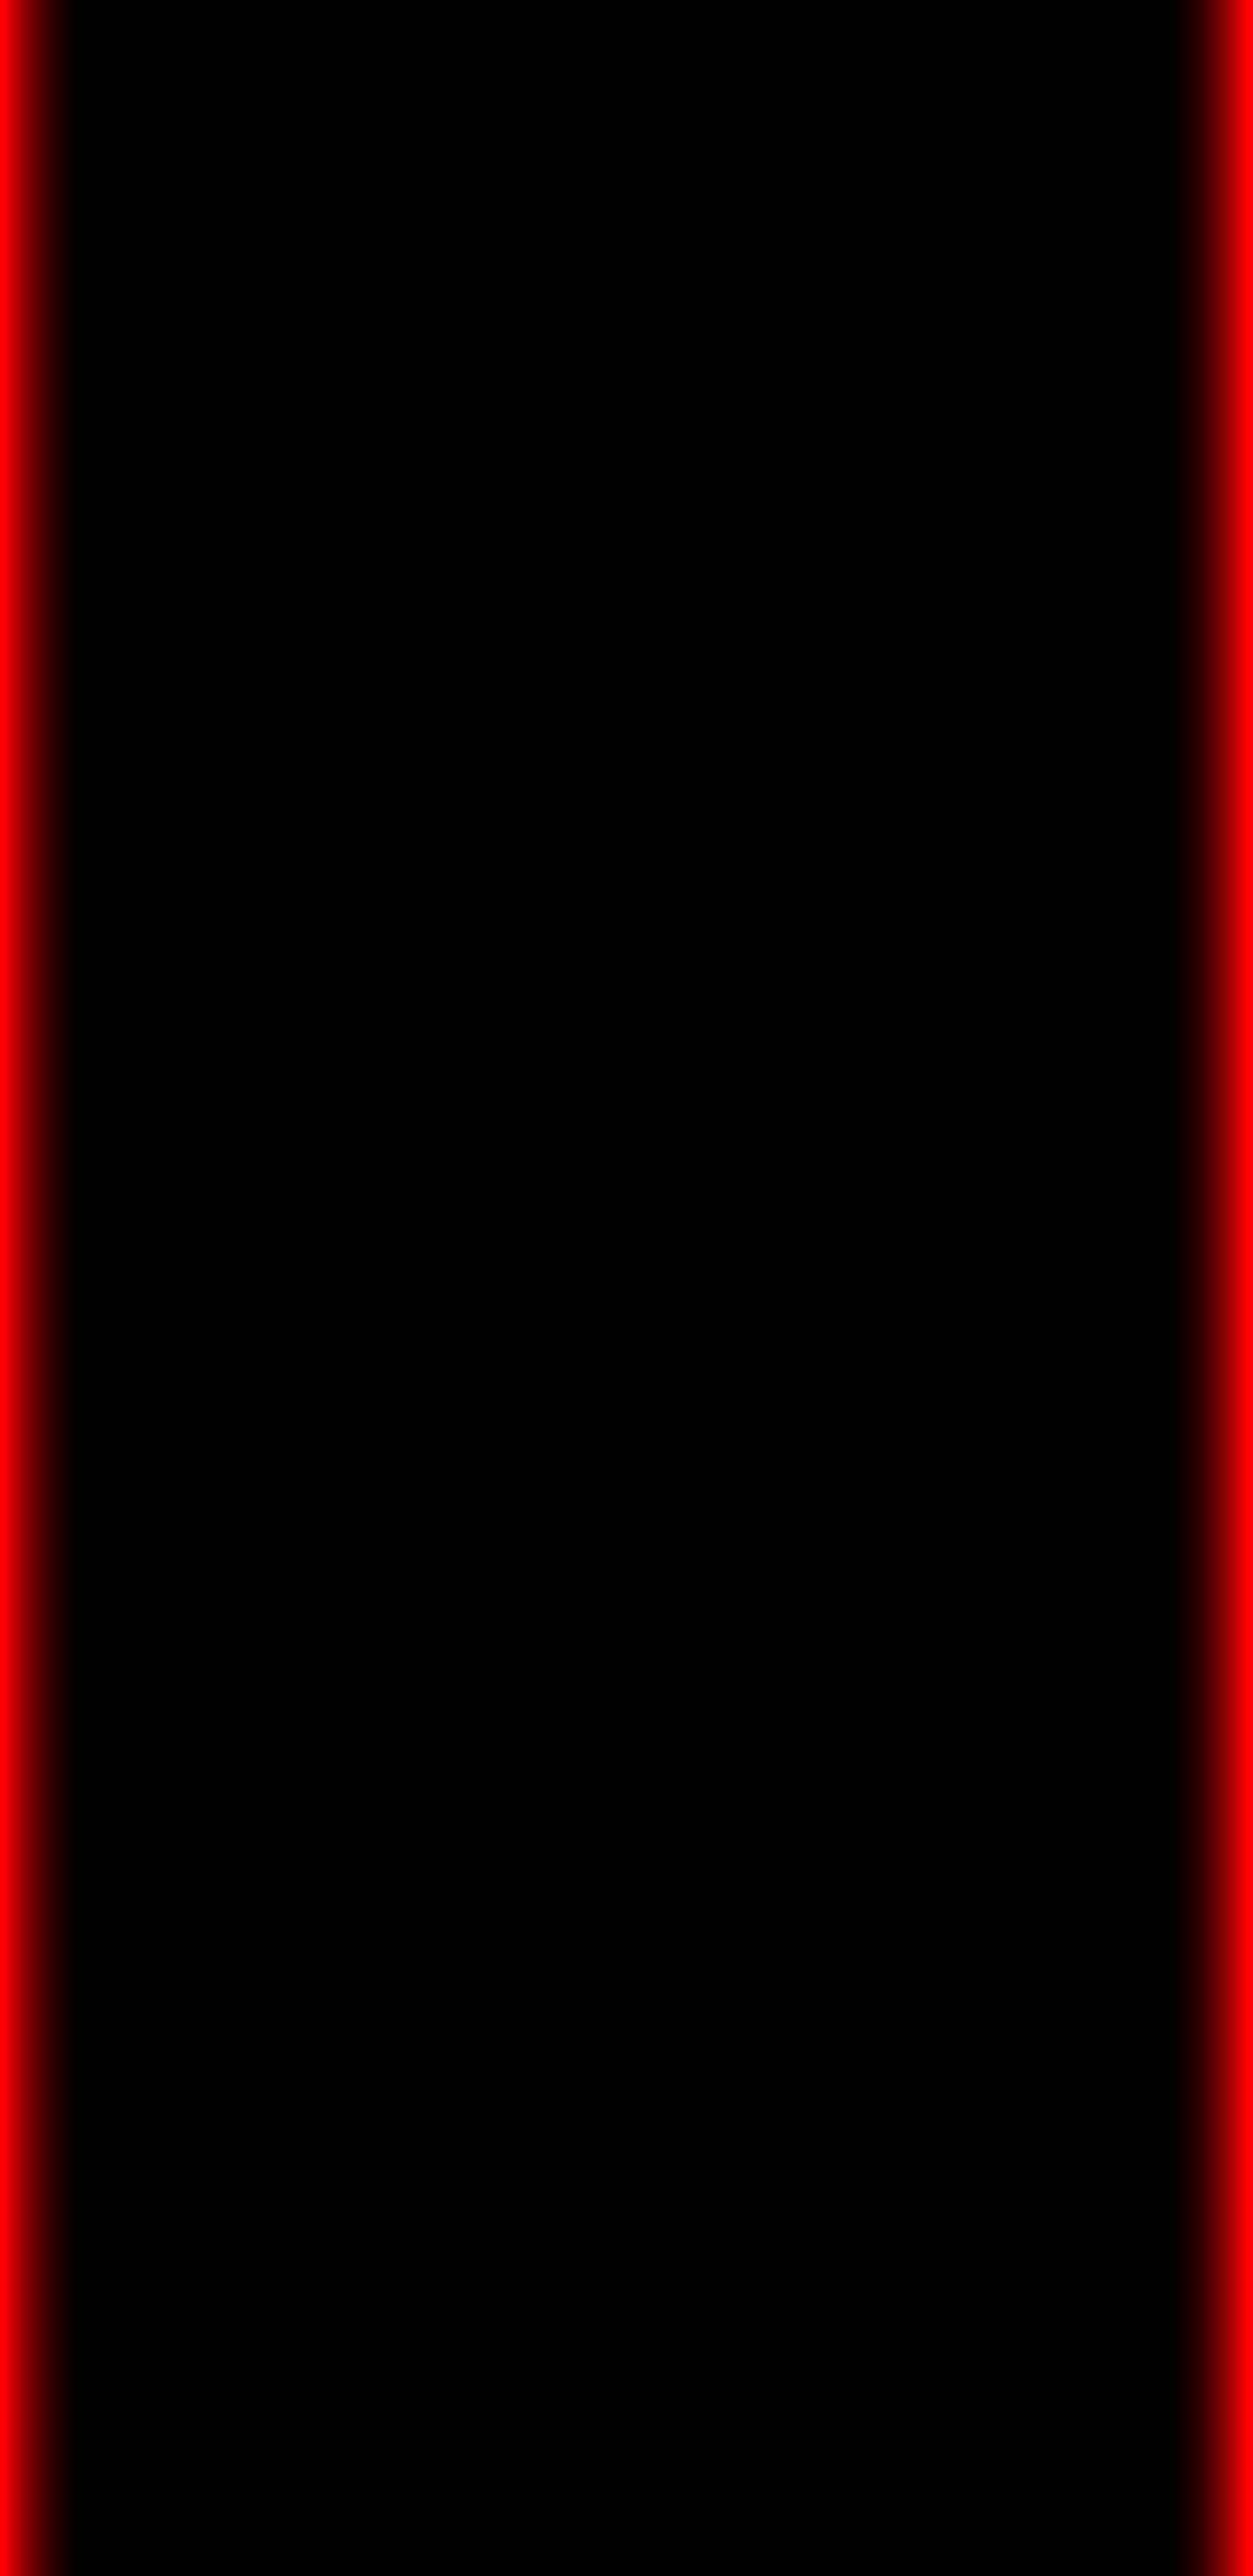 삼성 갤럭시 s8 벽지,빨간,검정,본문,주황색,폰트